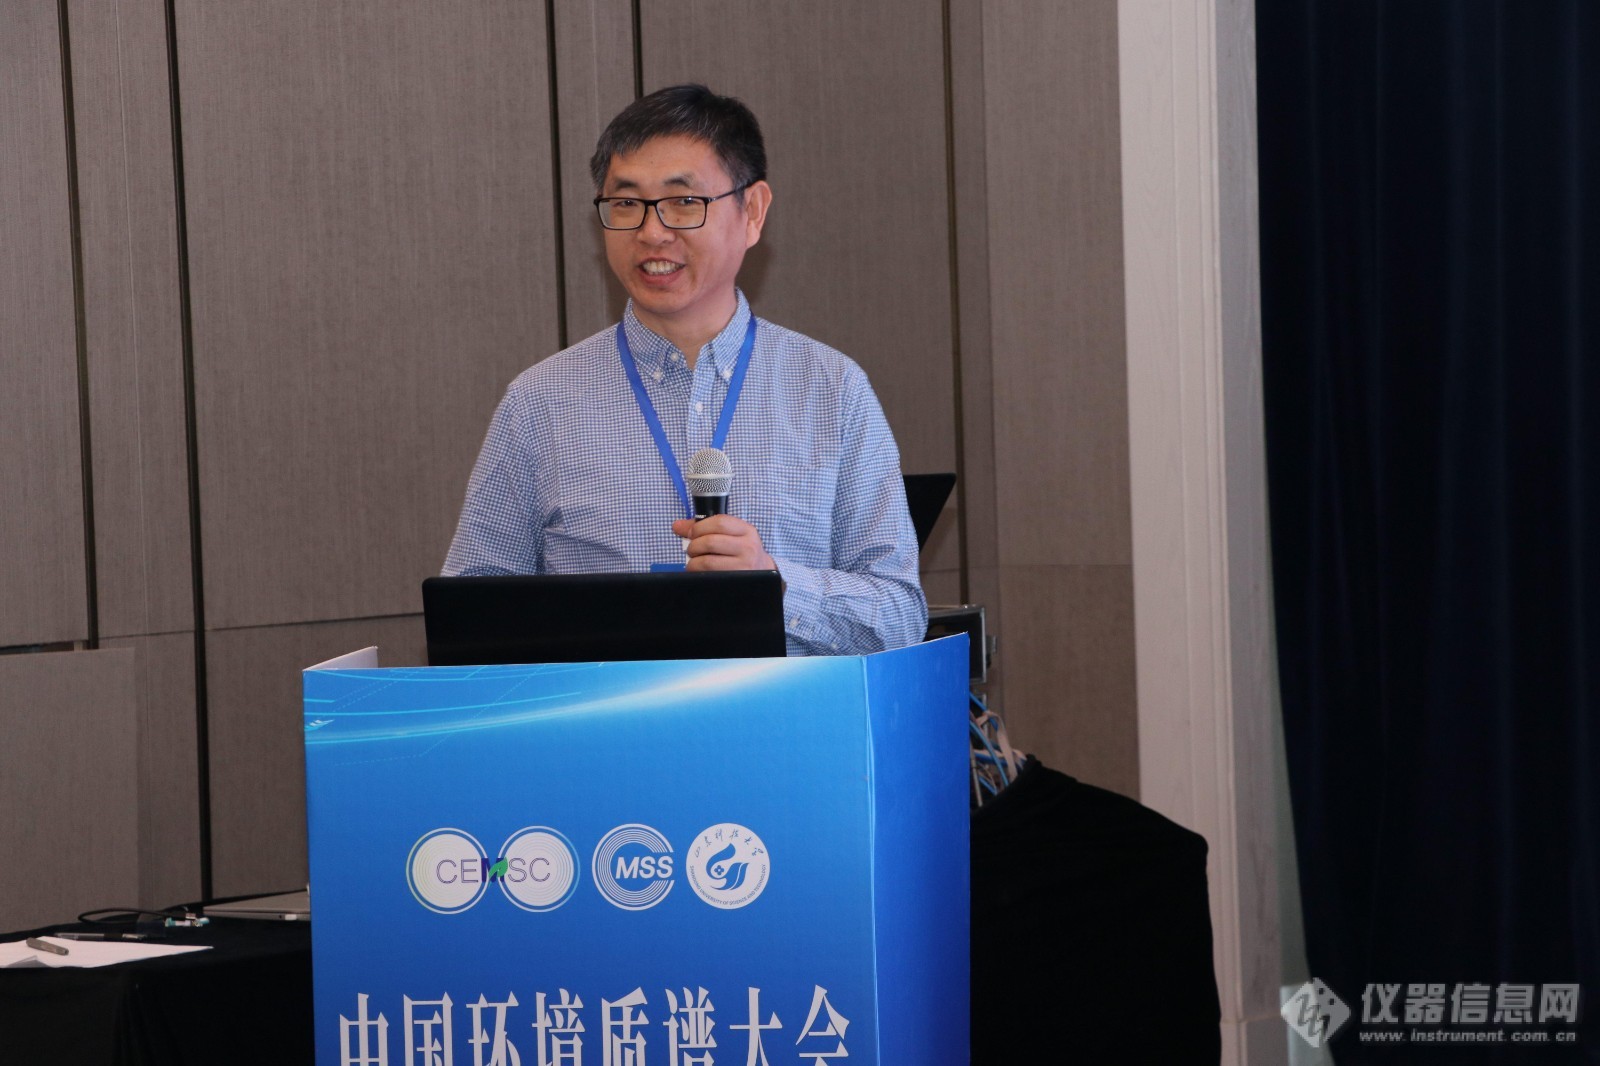 聚焦新污染物、环境监测——中国环境质谱大会分论坛精彩集锦